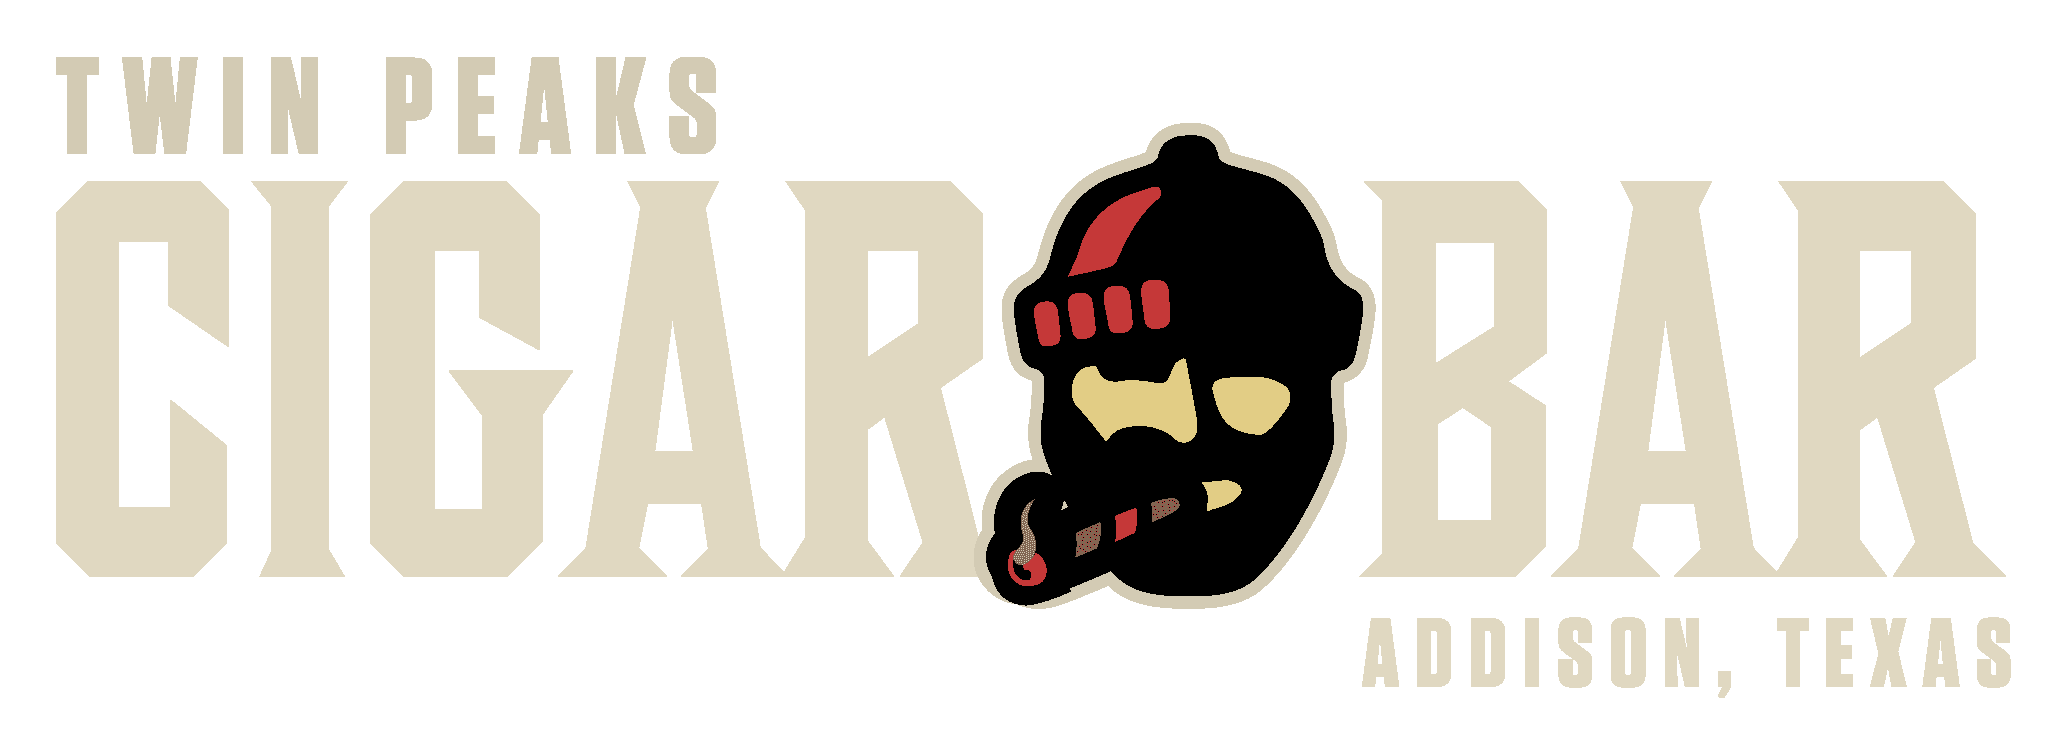 cigar bar logo